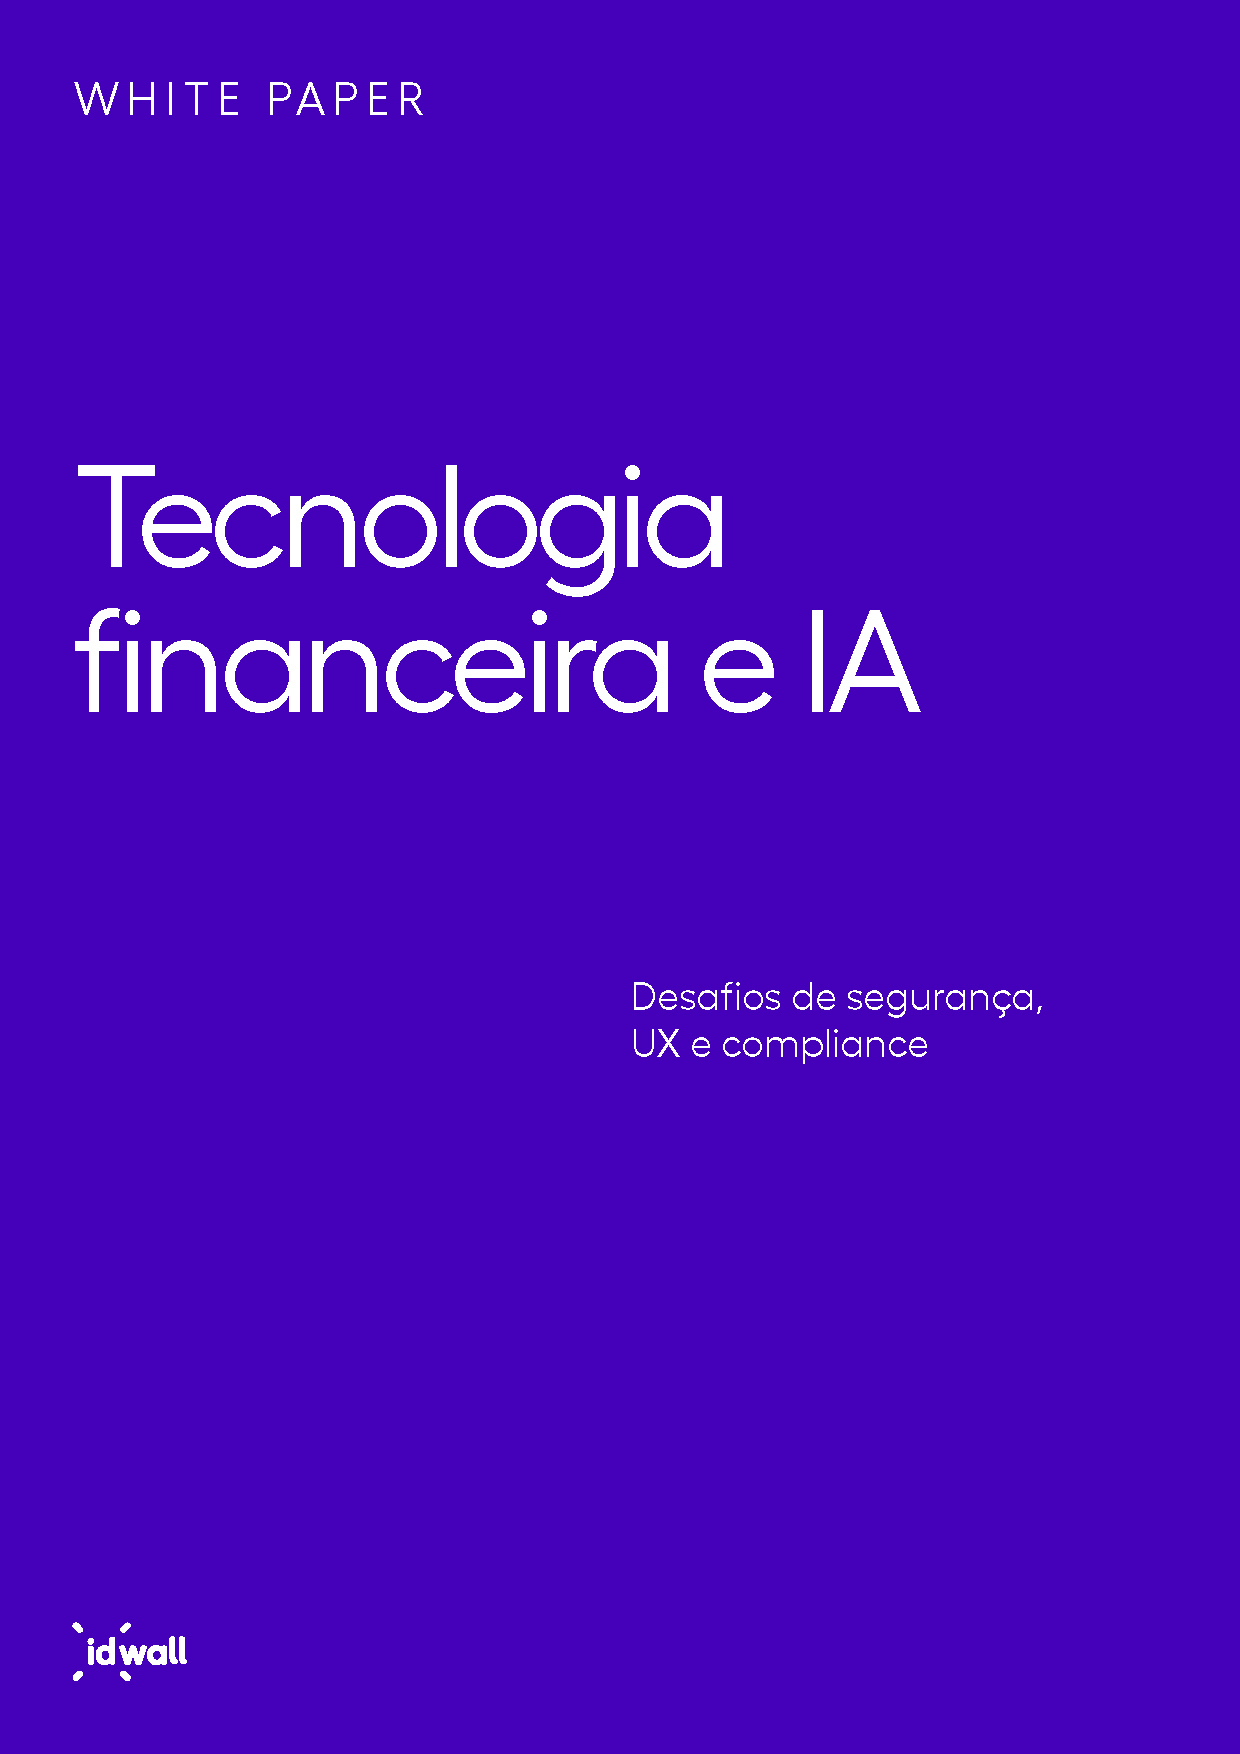 Whitepaper tecnologia financeira e IA